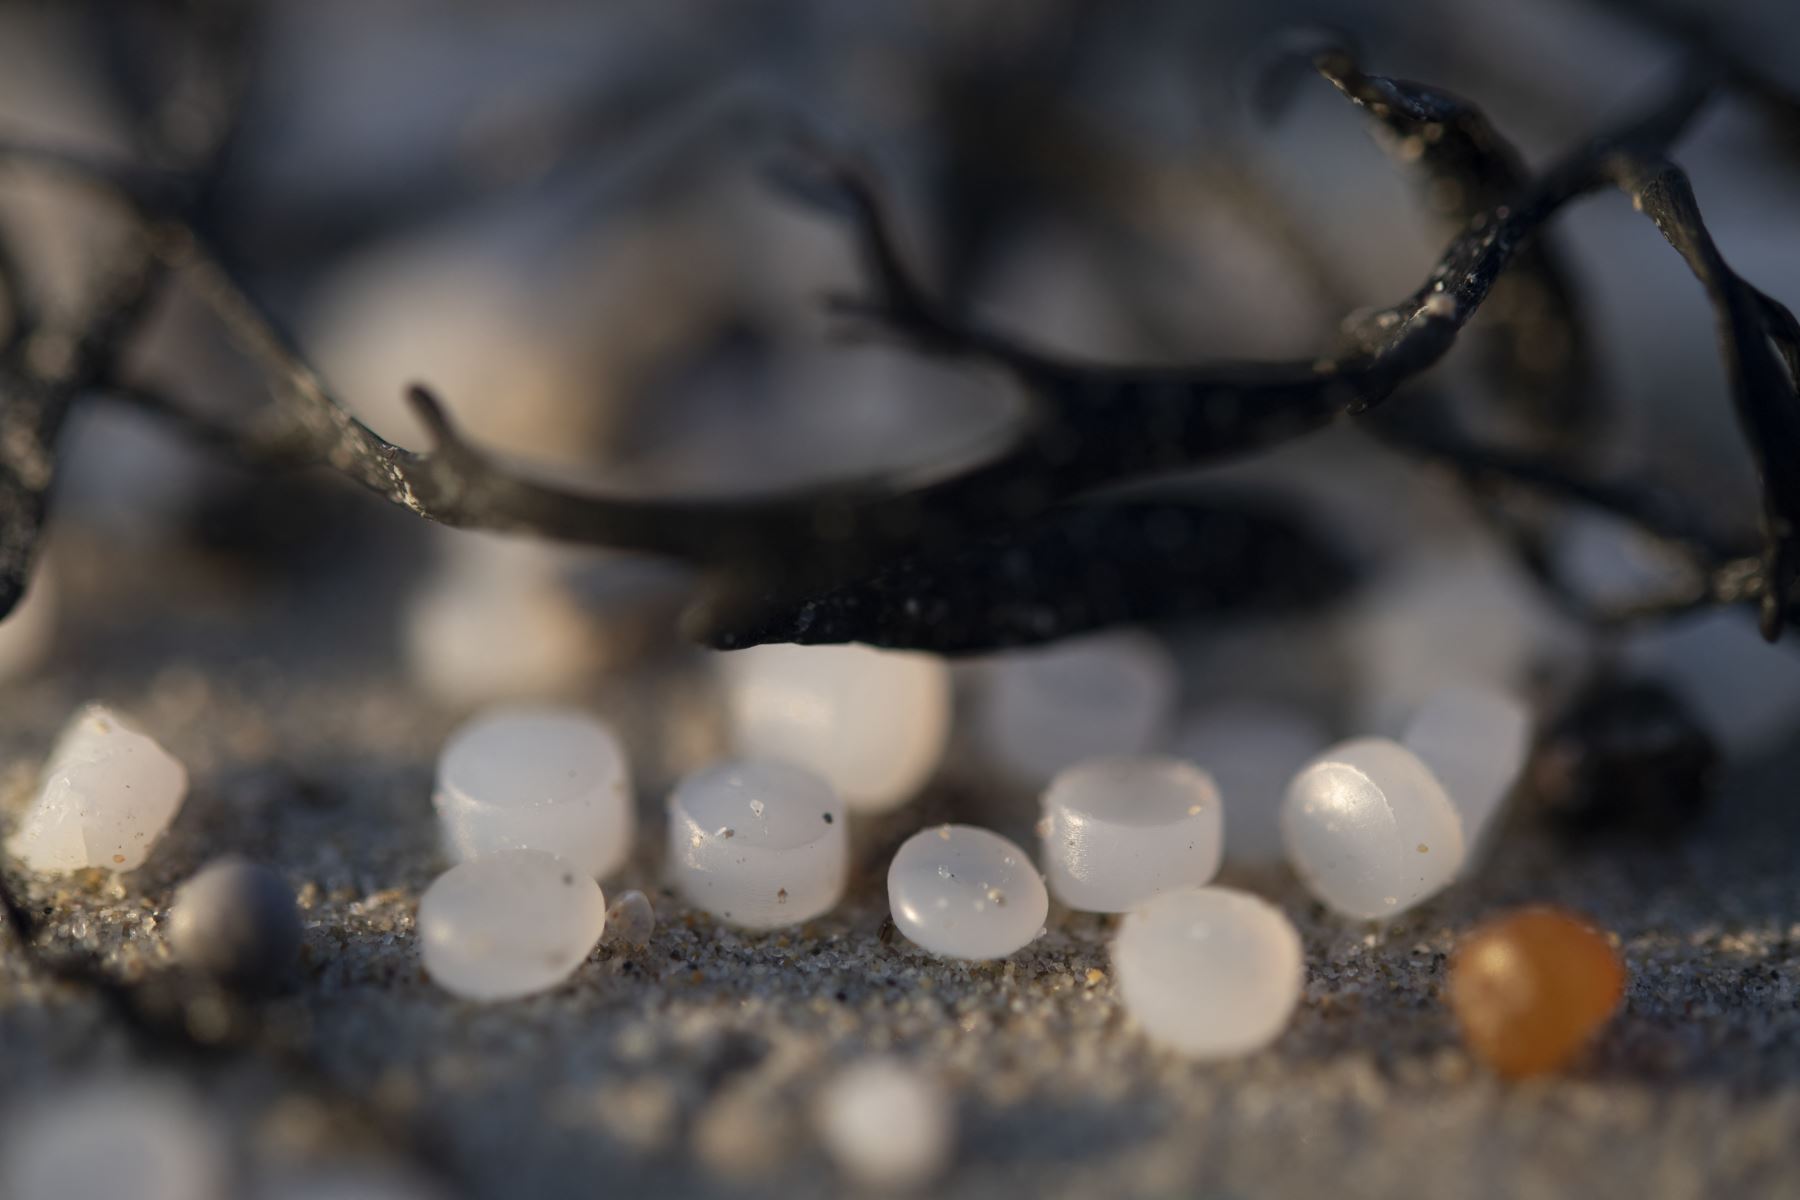 Esta fotografía se muestra cuentas de plástico, también llamadas "lágrimas de sirena", después de que una gran cantidad de ellas llegaran a la costa, contaminando las playas de Treguennec, Bretaña.
Foto: AFP